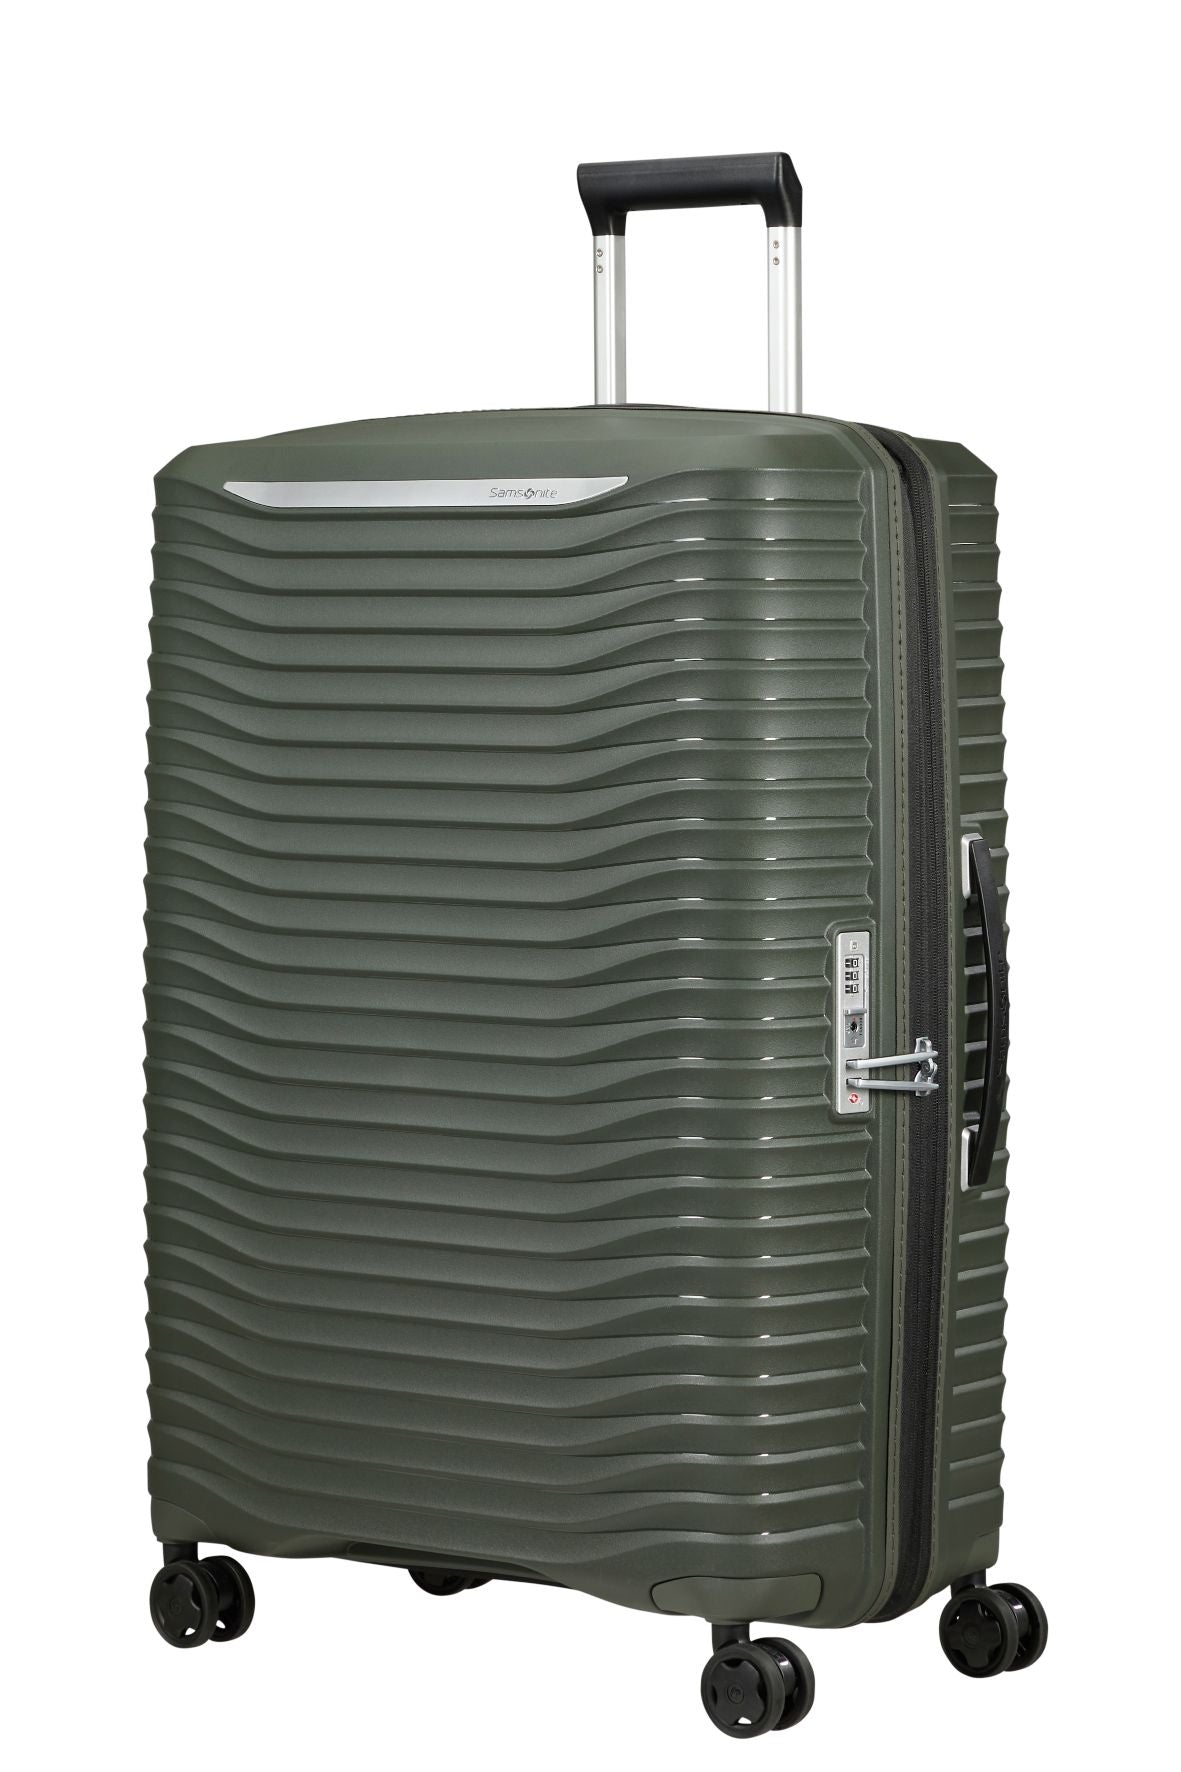 Samsonite - Upscape 75cm Medium Suitcase - Climbing Ivy | Bags To Go